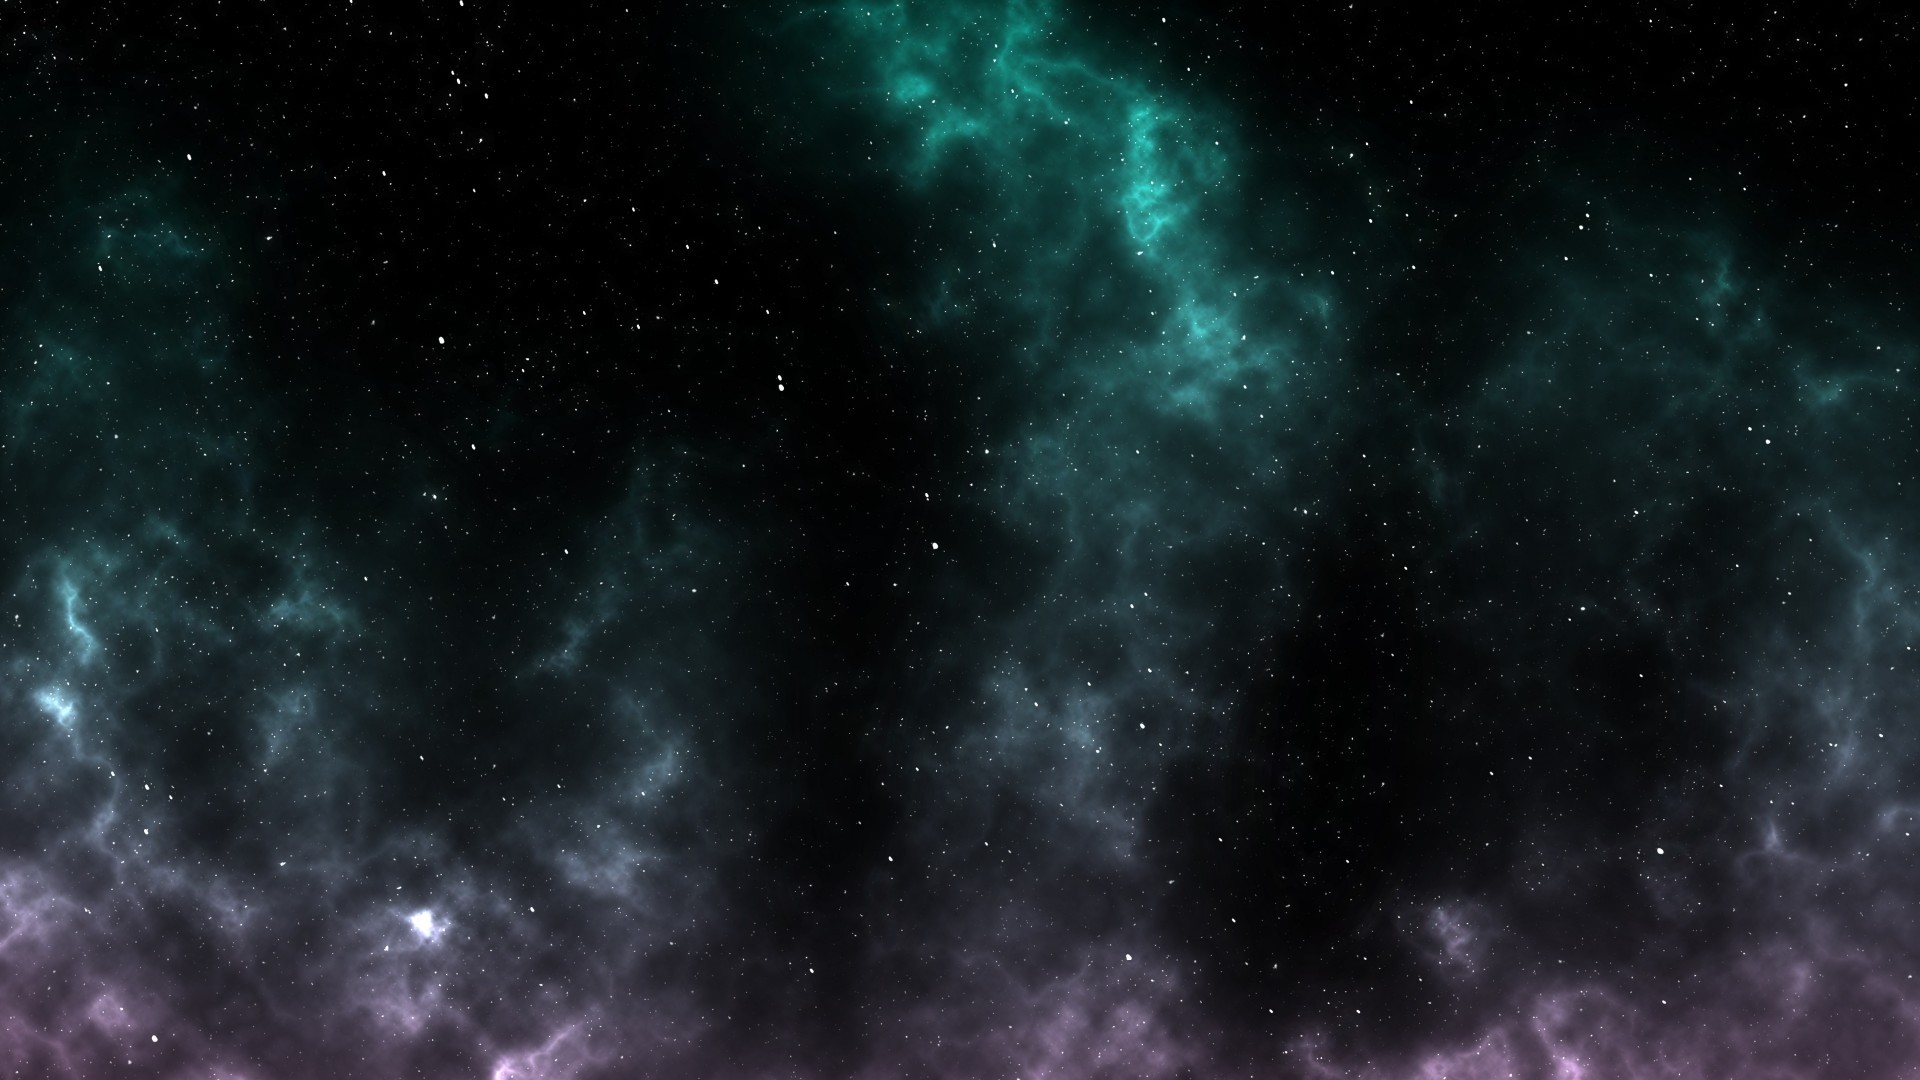 Galaxy, Stars, Nebula - Background Universe Full Hd - HD Wallpaper 